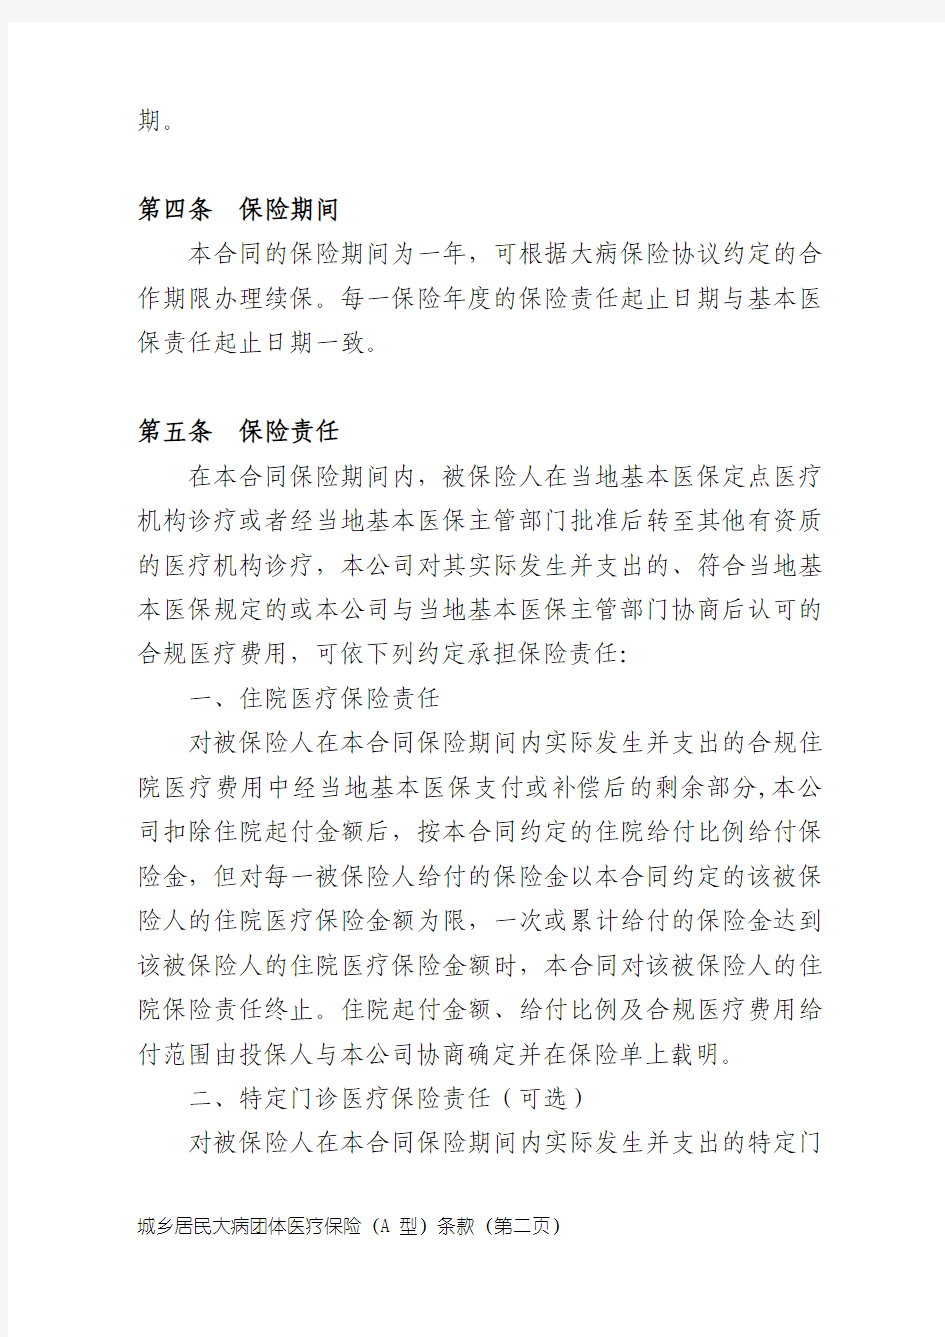 中国人民健康保险股份有限公司城乡居民大病团体医疗保险A型条款